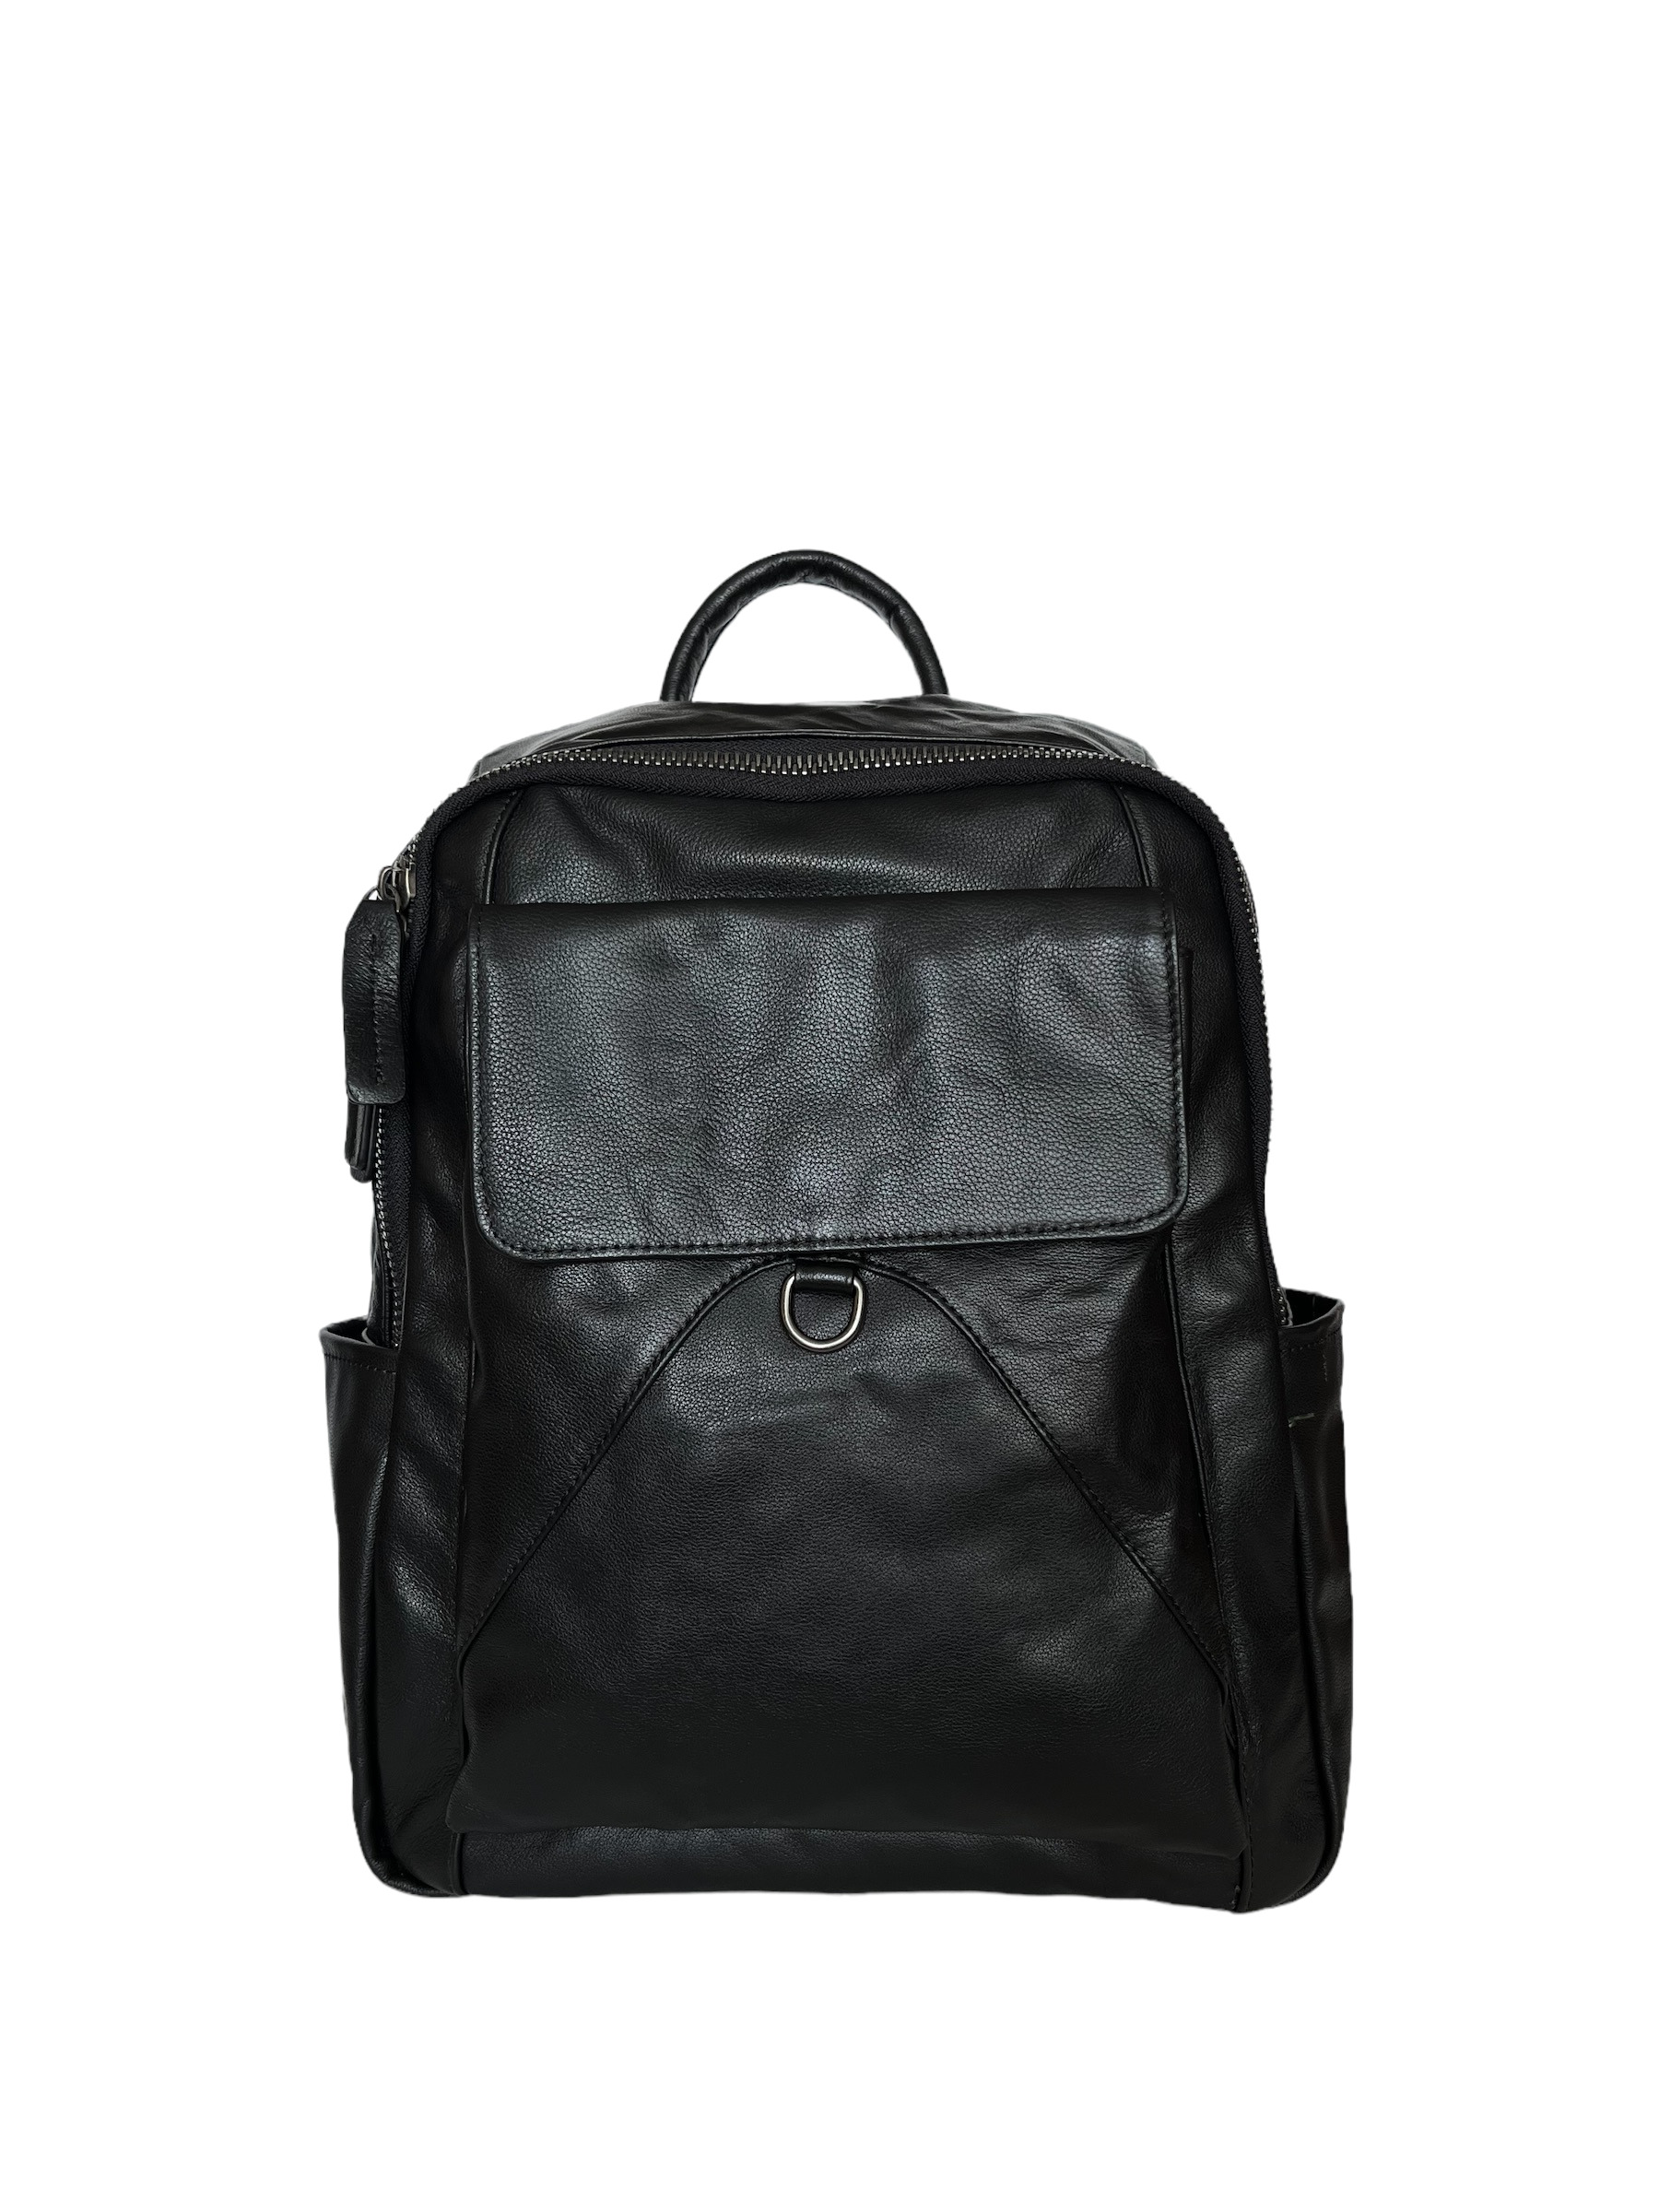 Рюкзак Capri CAP-81-9157 черный, 38x27x14 см